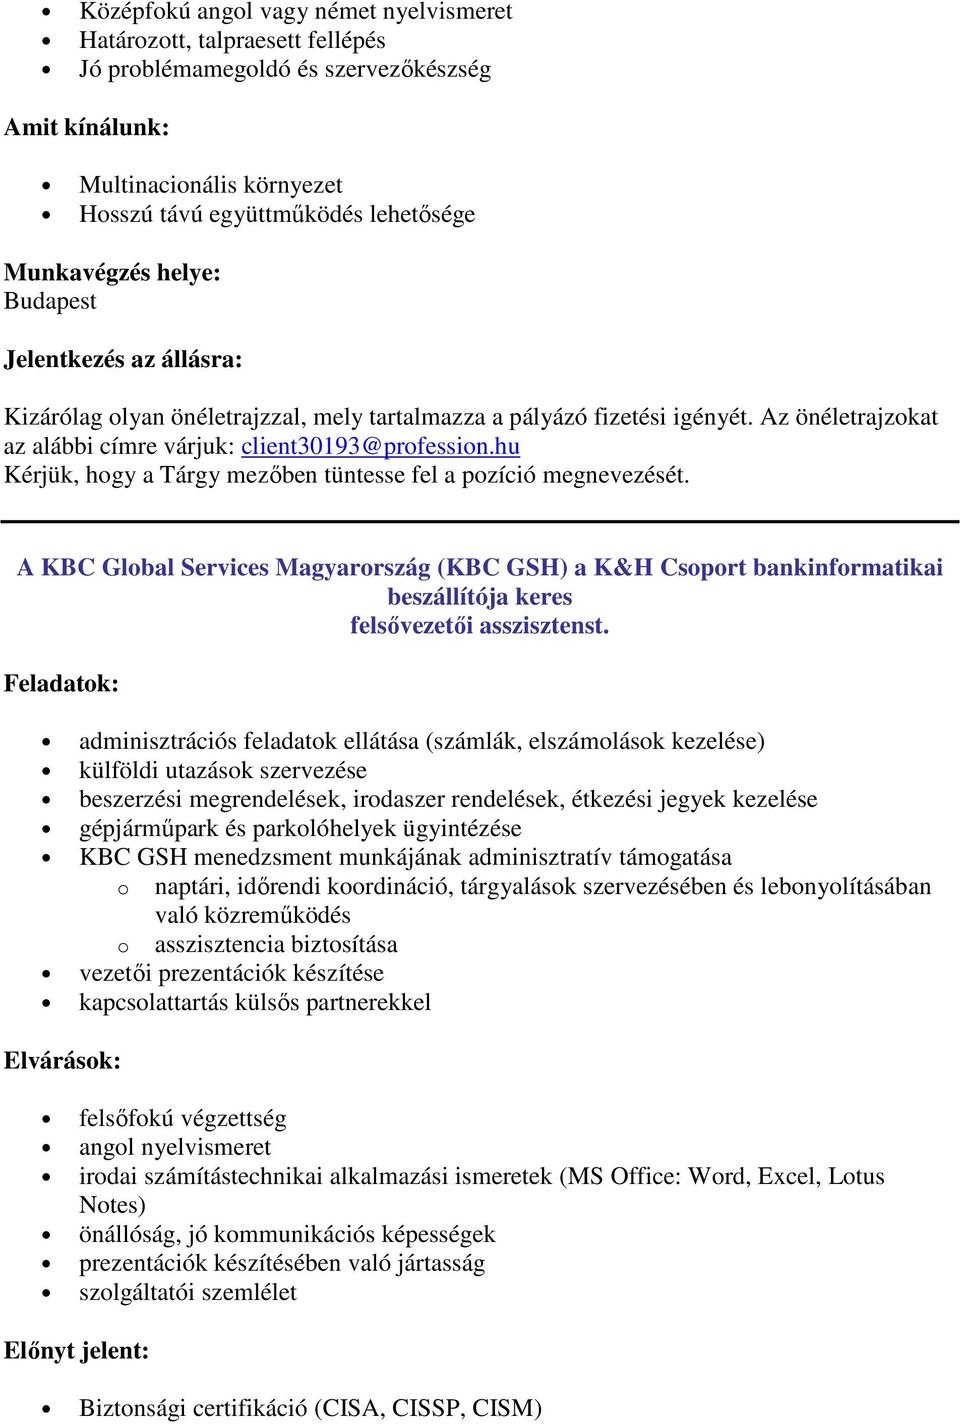 hu Kérjük, hogy a Tárgy mezőben tüntesse fel a pozíció megnevezését. A KBC Global Services Magyarország (KBC GSH) a K&H Csoport bankinformatikai beszállítója keres felsővezetői asszisztenst.